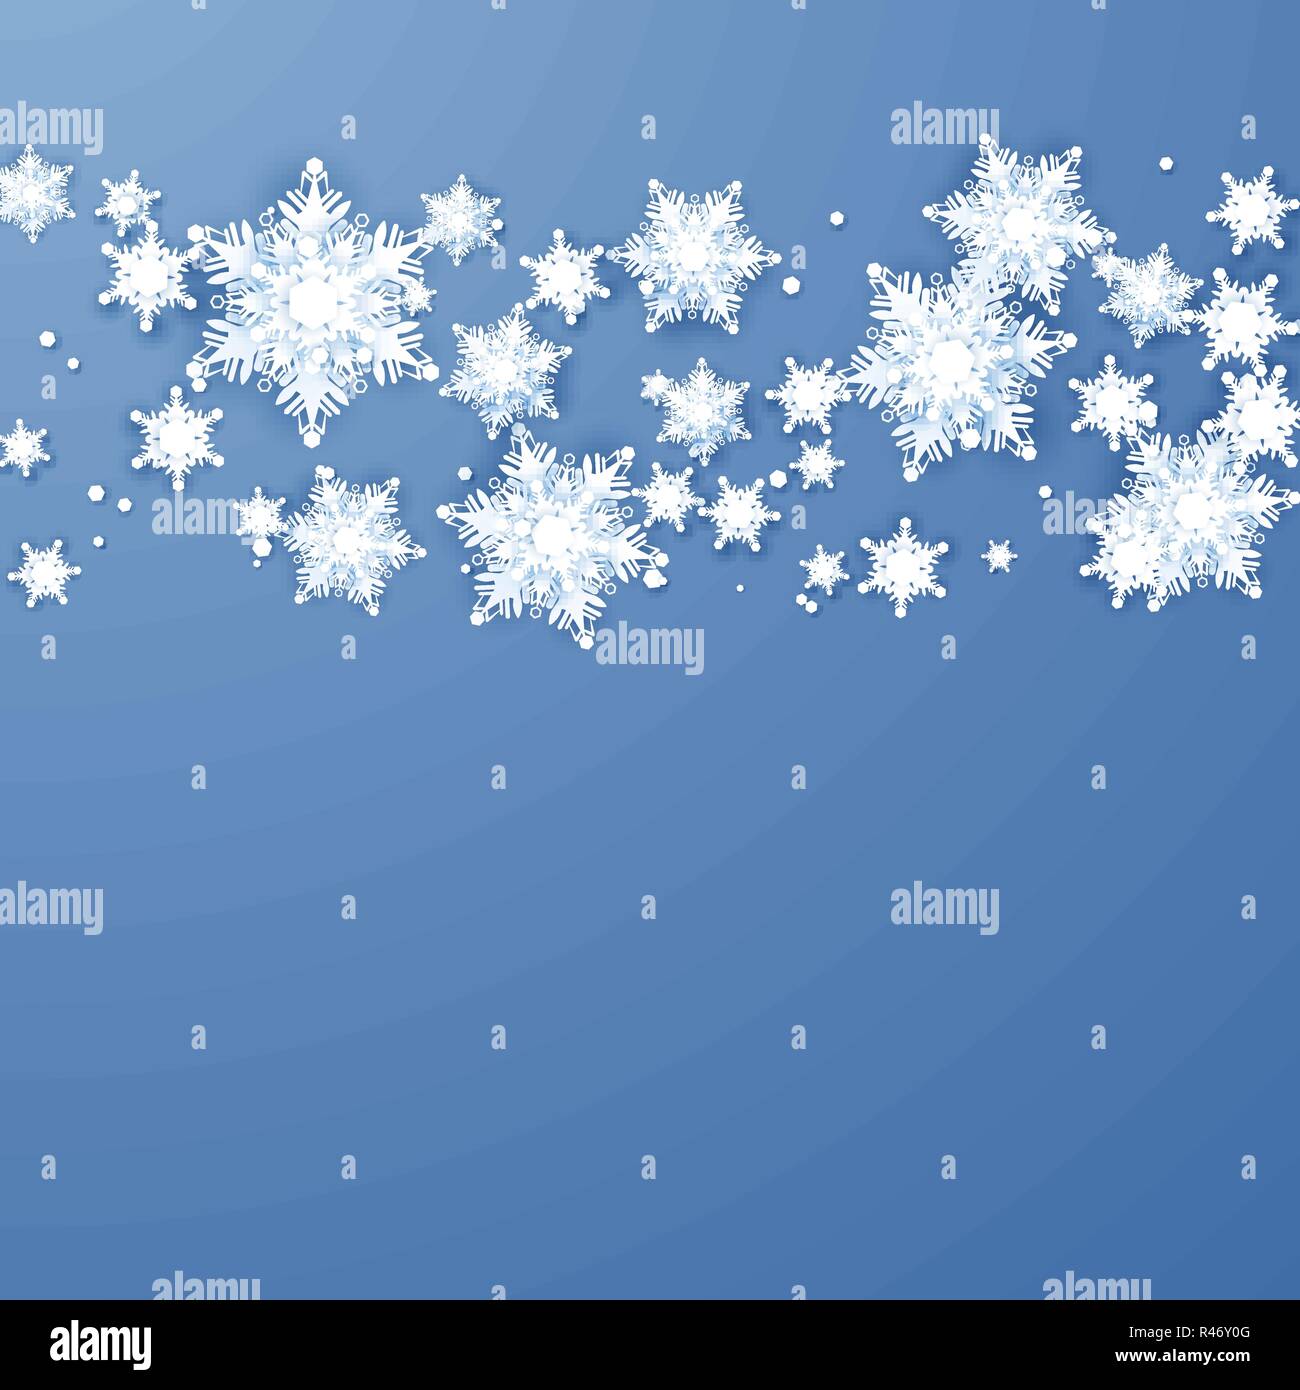 Abstrakte Weihnachten Hintergrund mit Origami Schneeflocken. Winter Paper art Design. Weißes Papier Schneeflocken mit Schatten. Weihnachten und Neujahr Karte templ Stock Vektor